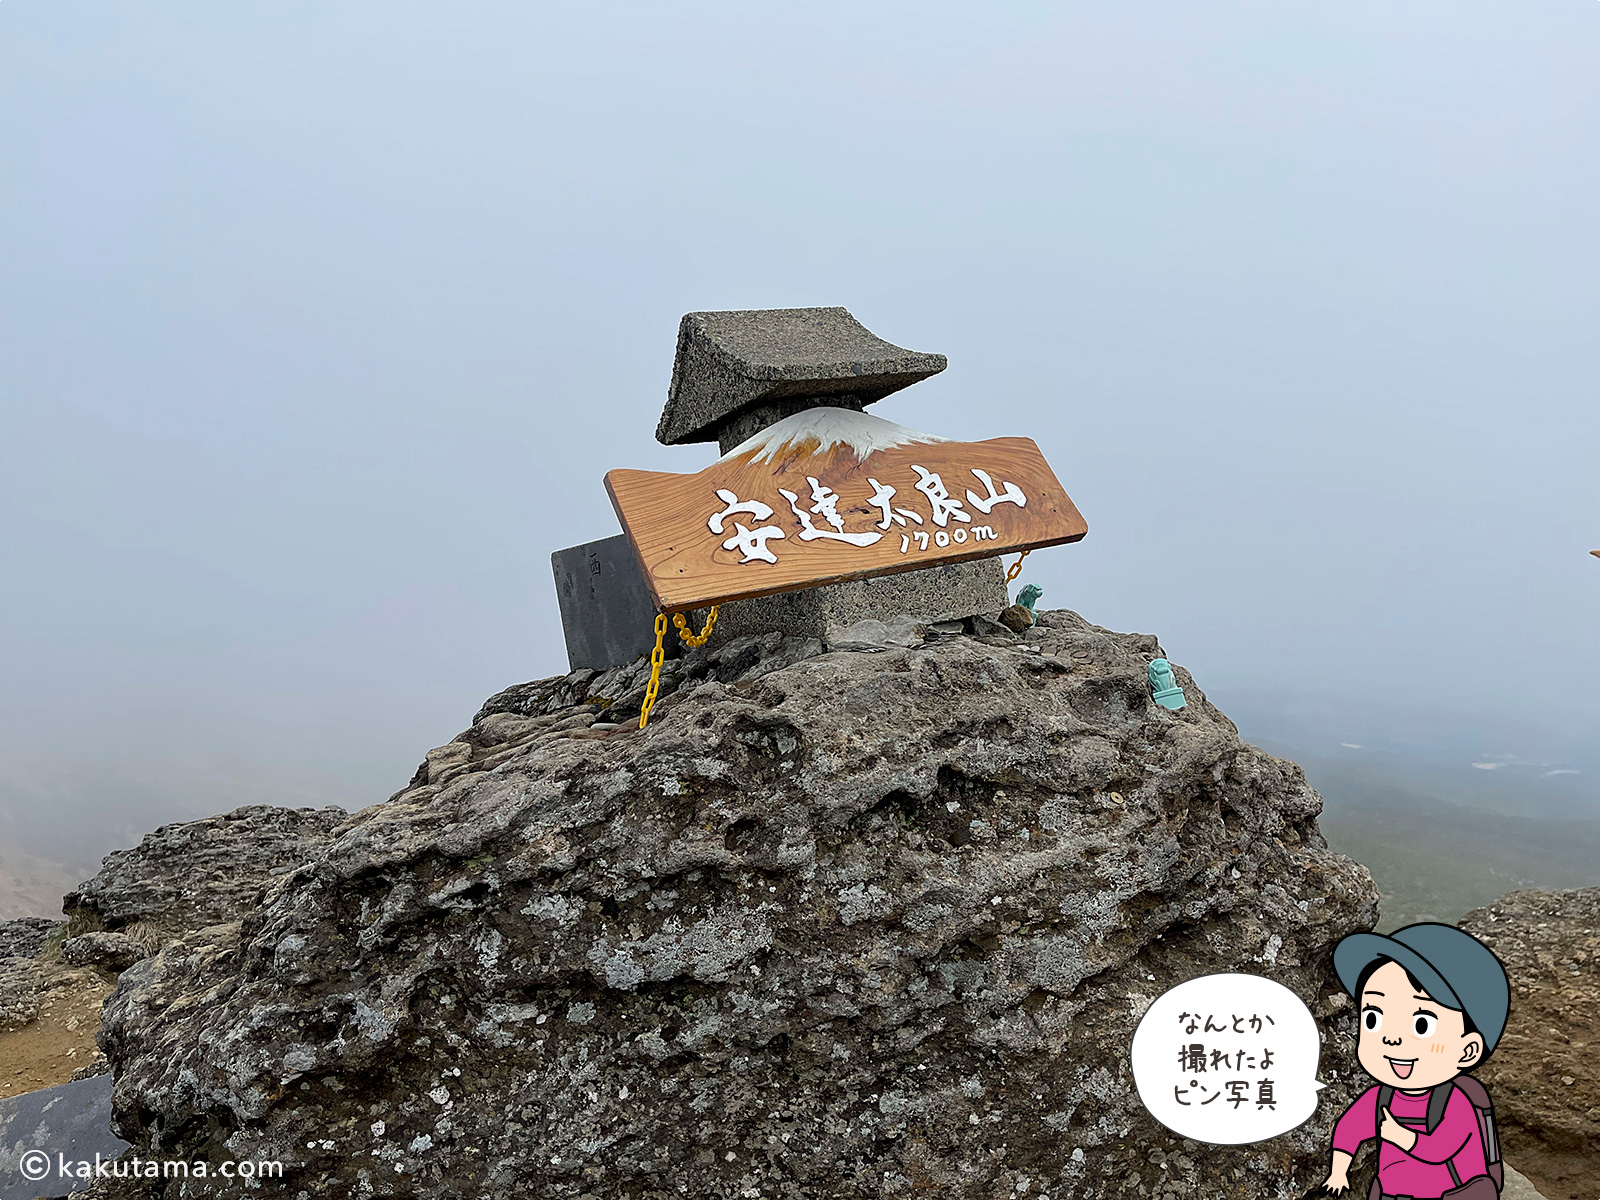 安達太良山、標高1700mの標識の写真と登山者のイラスト